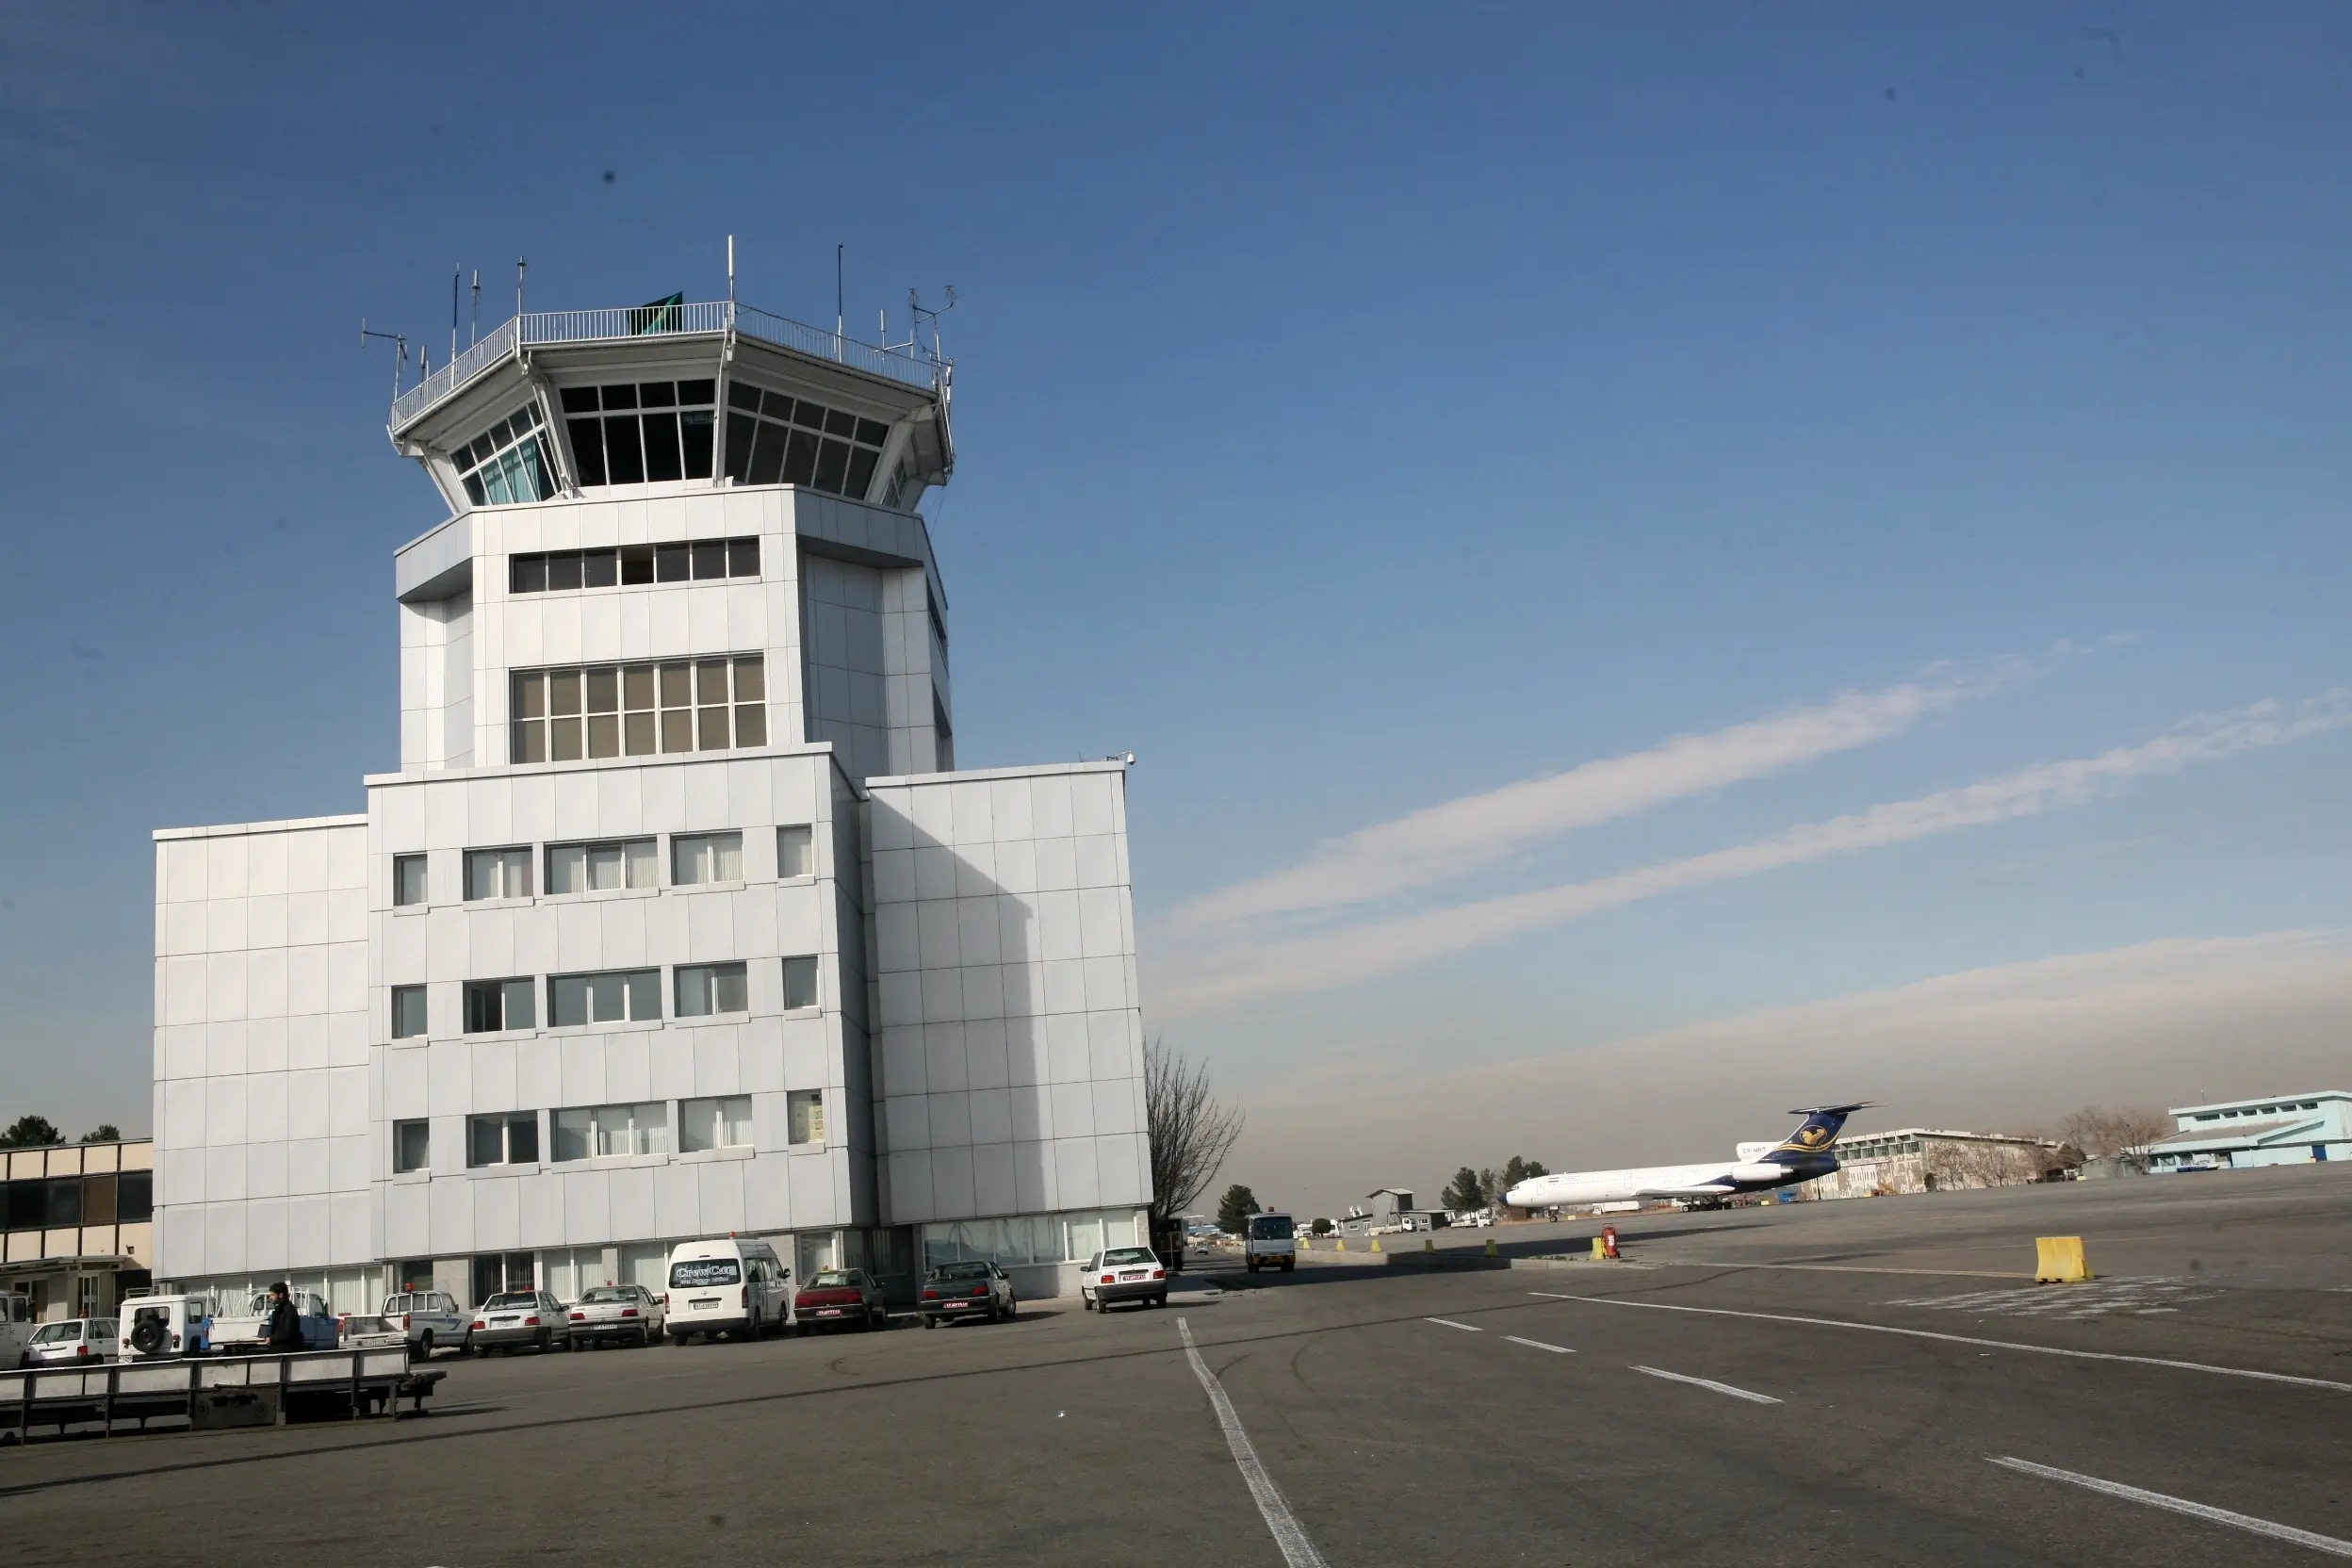 اولین پرواز ویژه اربعین در فرودگاه بین المللی زاهدان برقرار شد